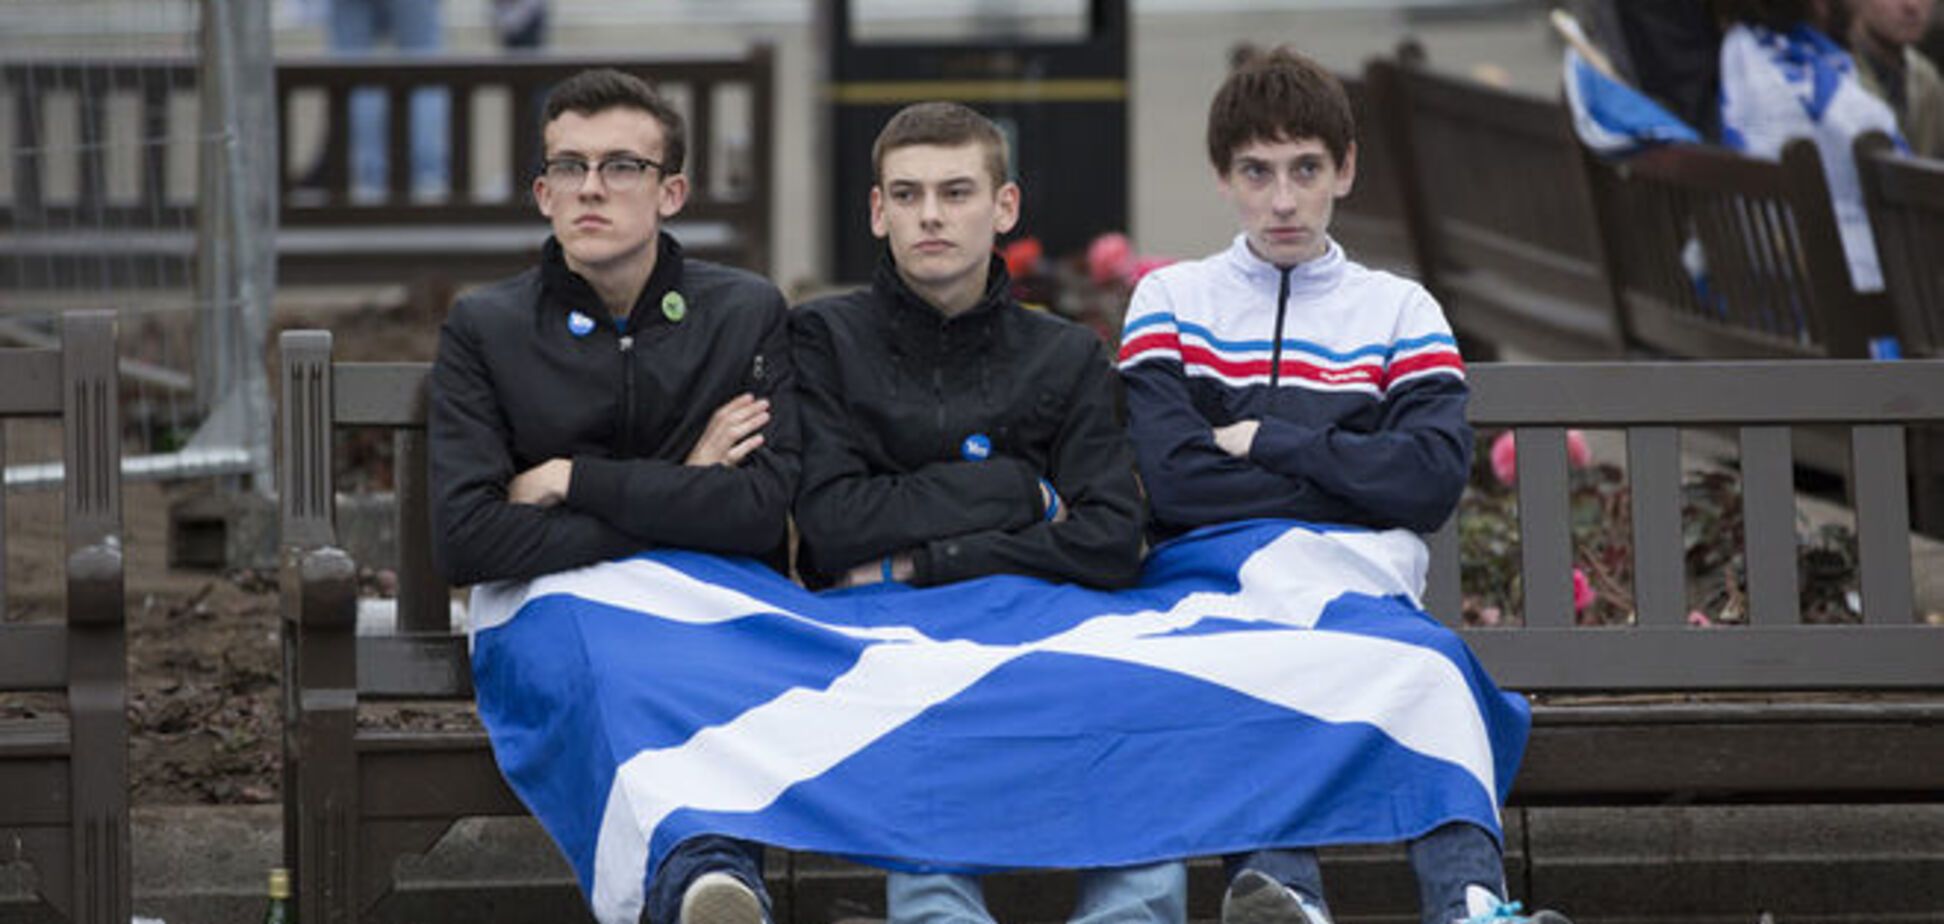 Шотландия требует независимости. Или выхода из ЕС